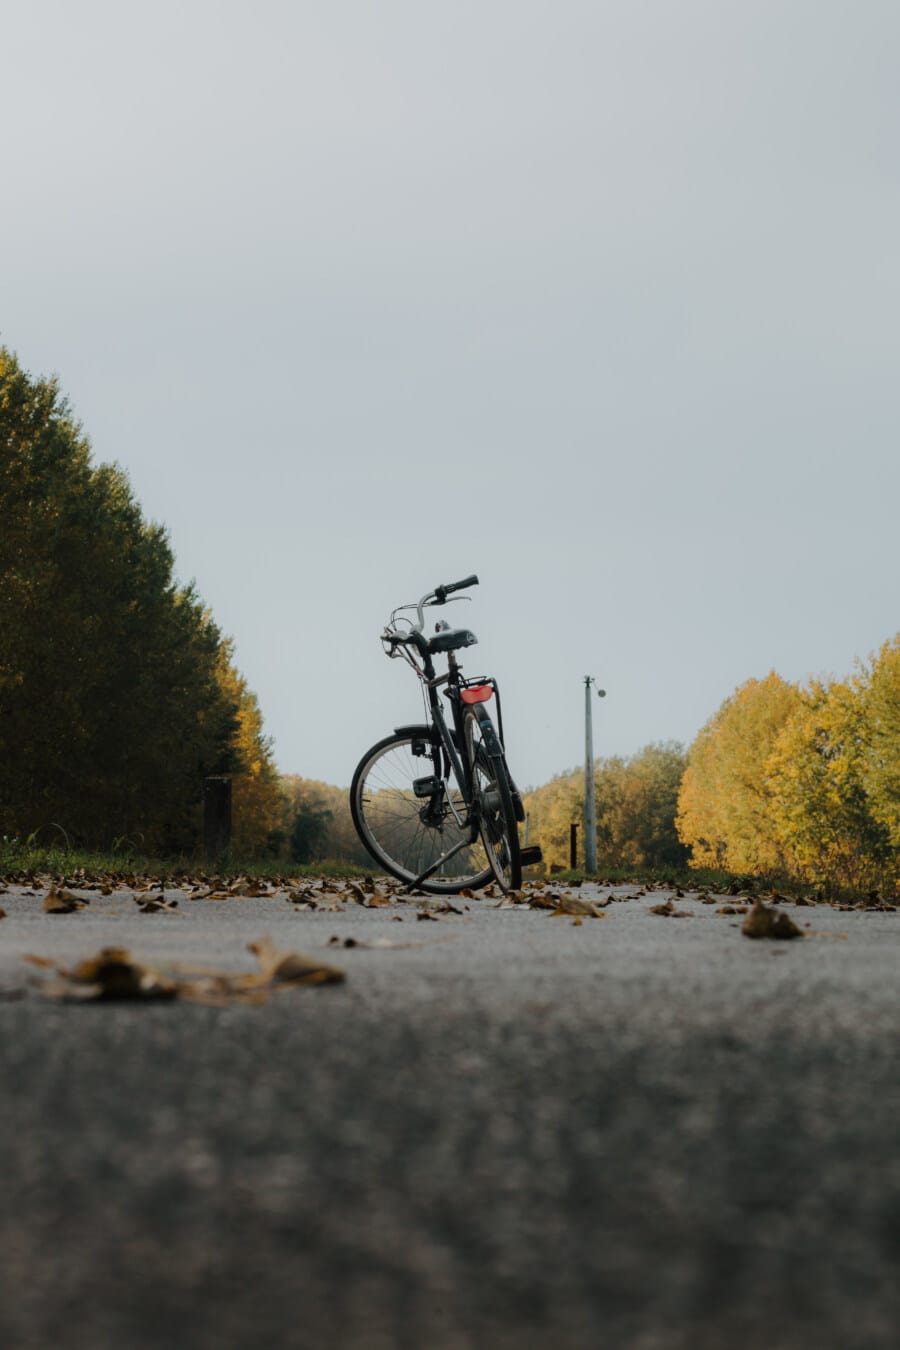 klasično, bicikl, starinski, asfalt, cesta, suho, lišće, vozila, na otvorenom, krajolik